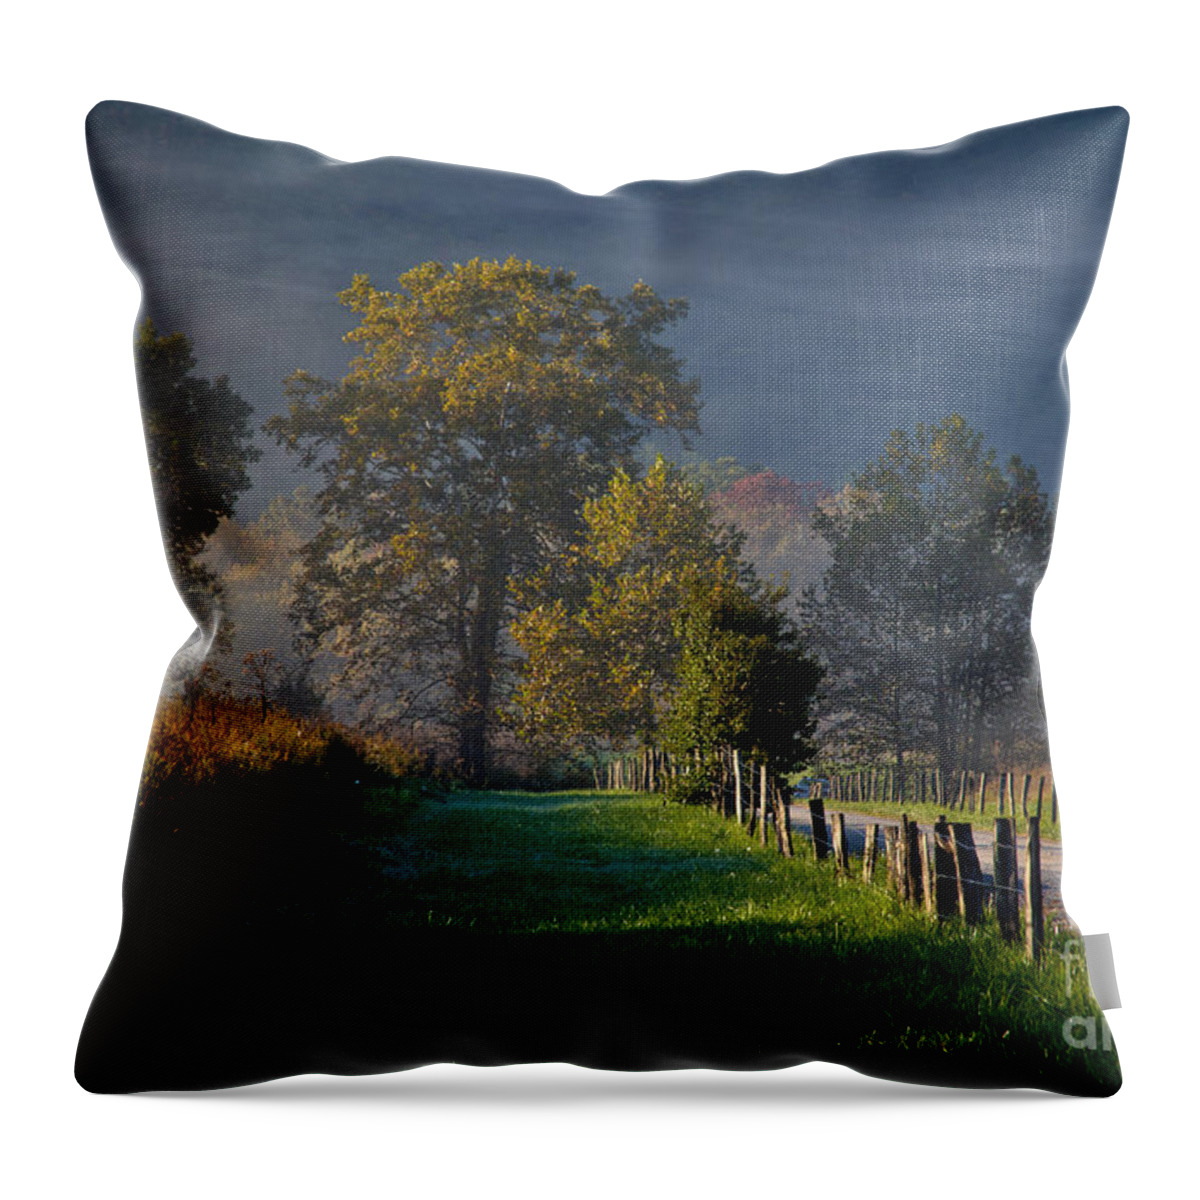 Cades Throw Pillow featuring the photograph Smoky Mountain Morning by Douglas Stucky